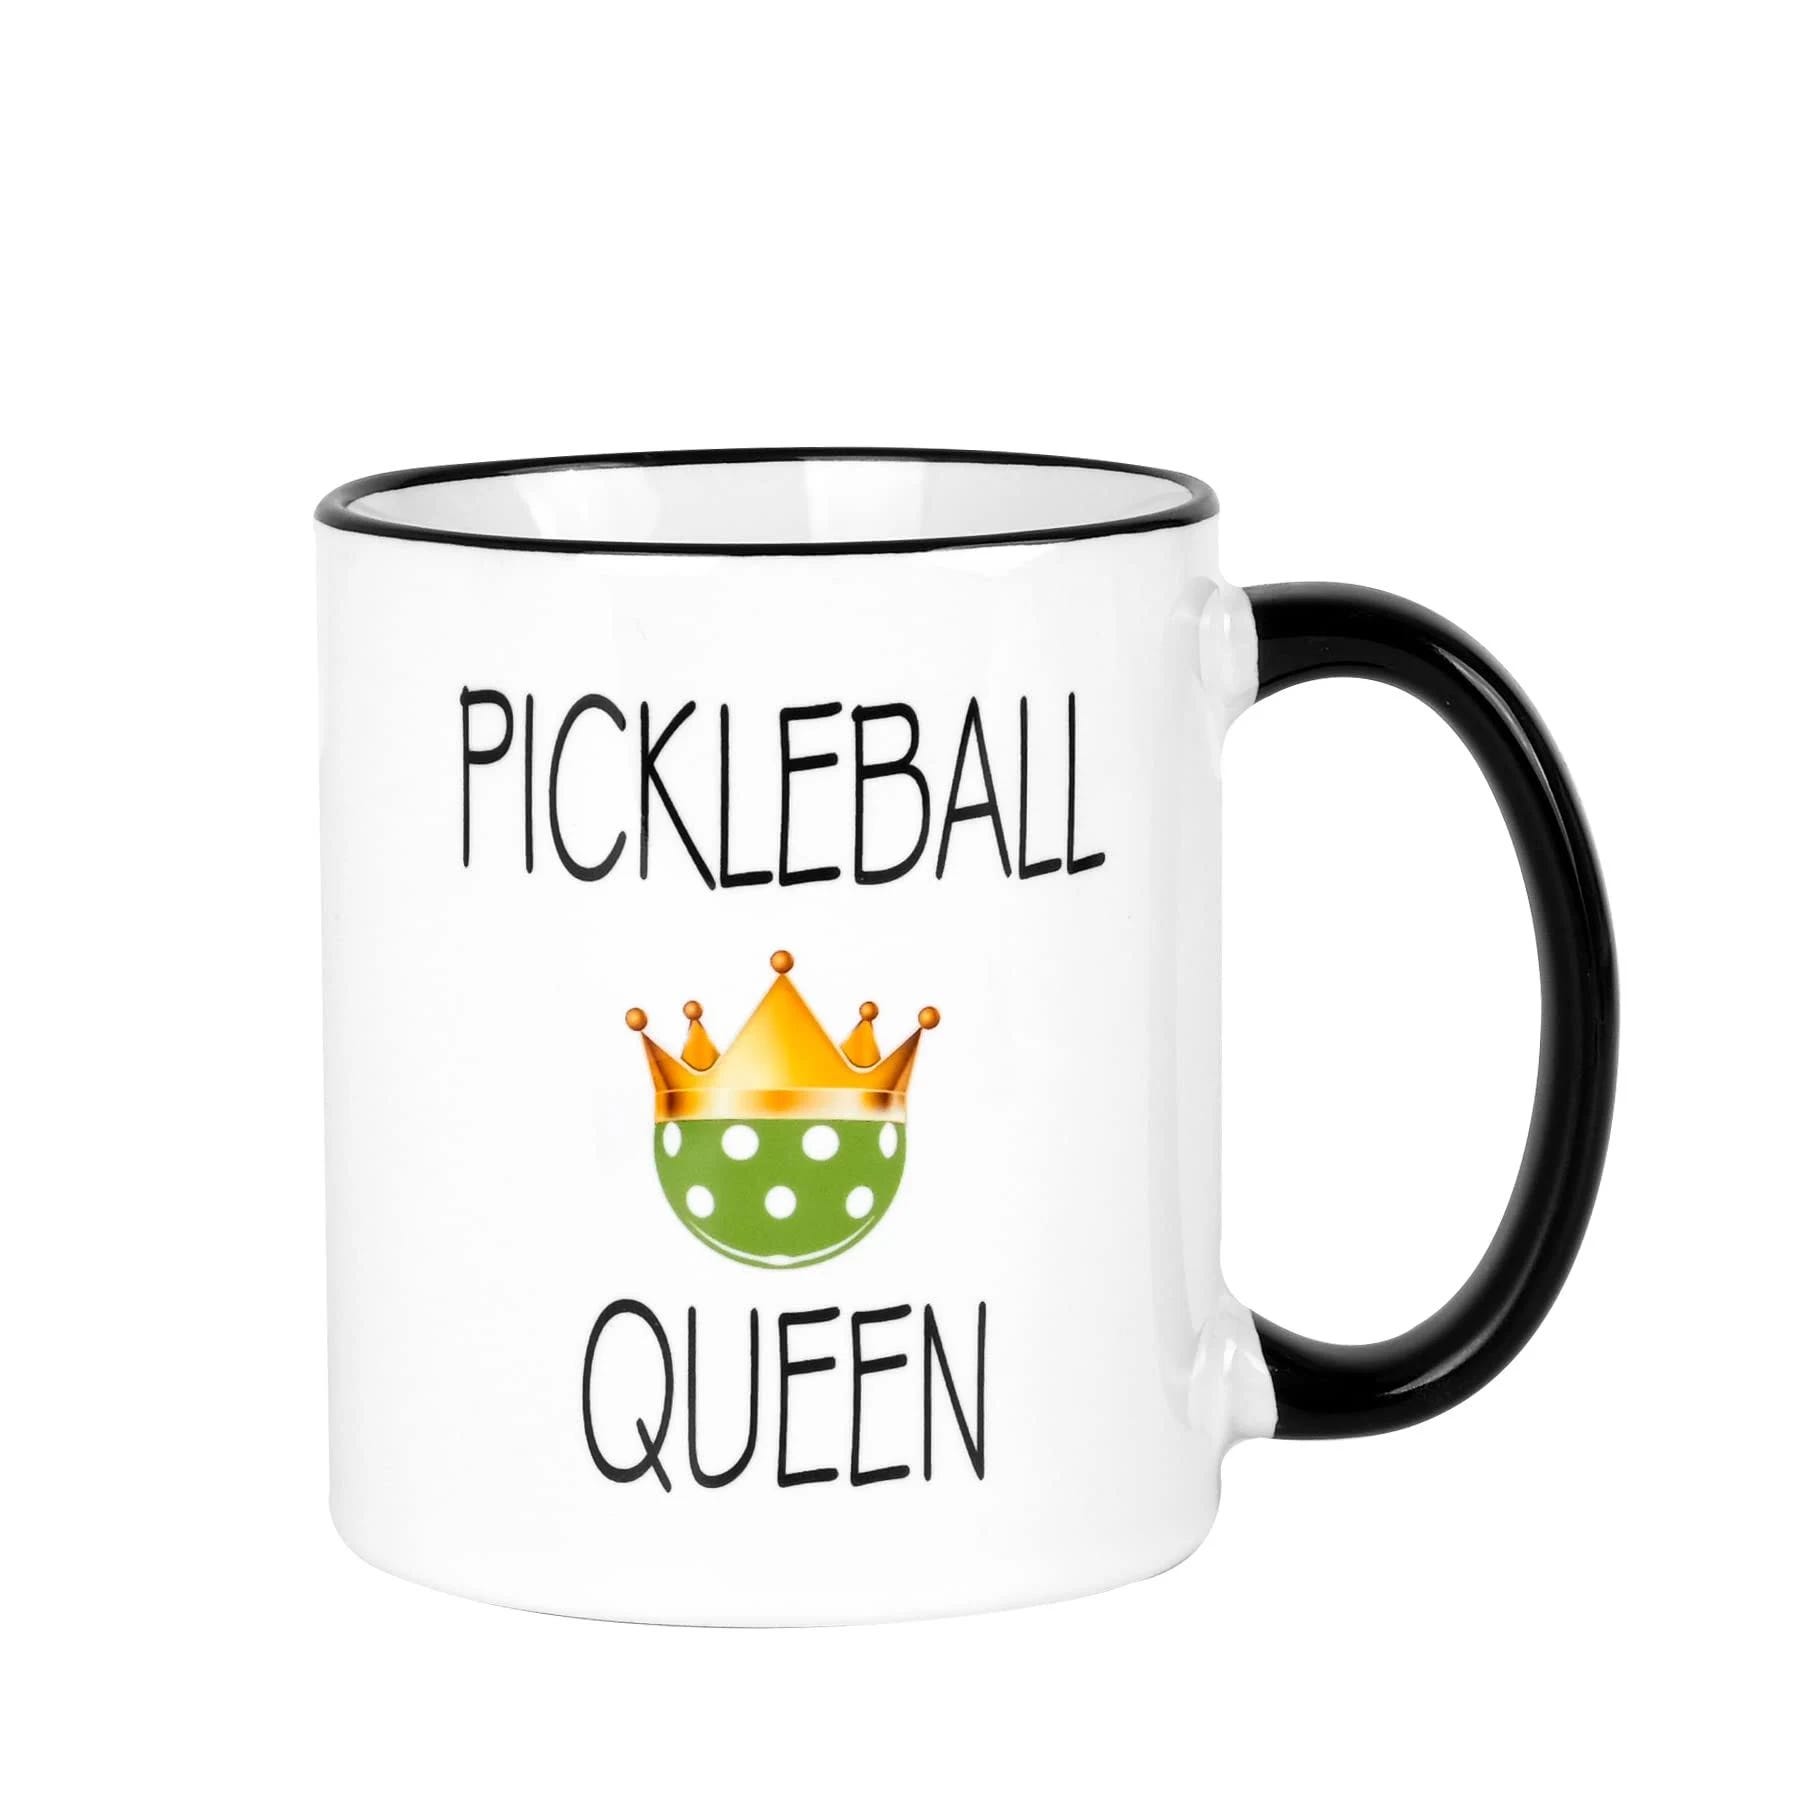 Mustry Pickleball Gift for Women: The Pickleball Queen Mug | Image